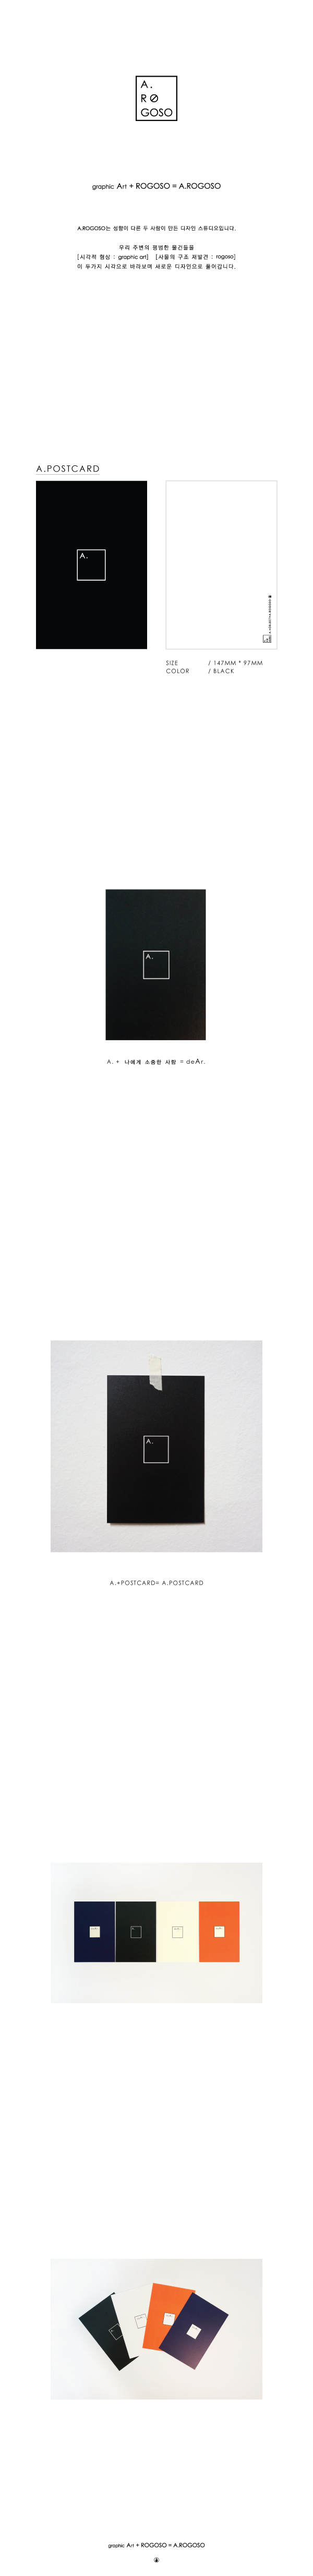 A.POSTCARD BLACK 1,000원 - 에이.로고소 디자인문구, 카드/편지/봉투, 엽서, 심플 바보사랑 A.POSTCARD BLACK 1,000원 - 에이.로고소 디자인문구, 카드/편지/봉투, 엽서, 심플 바보사랑